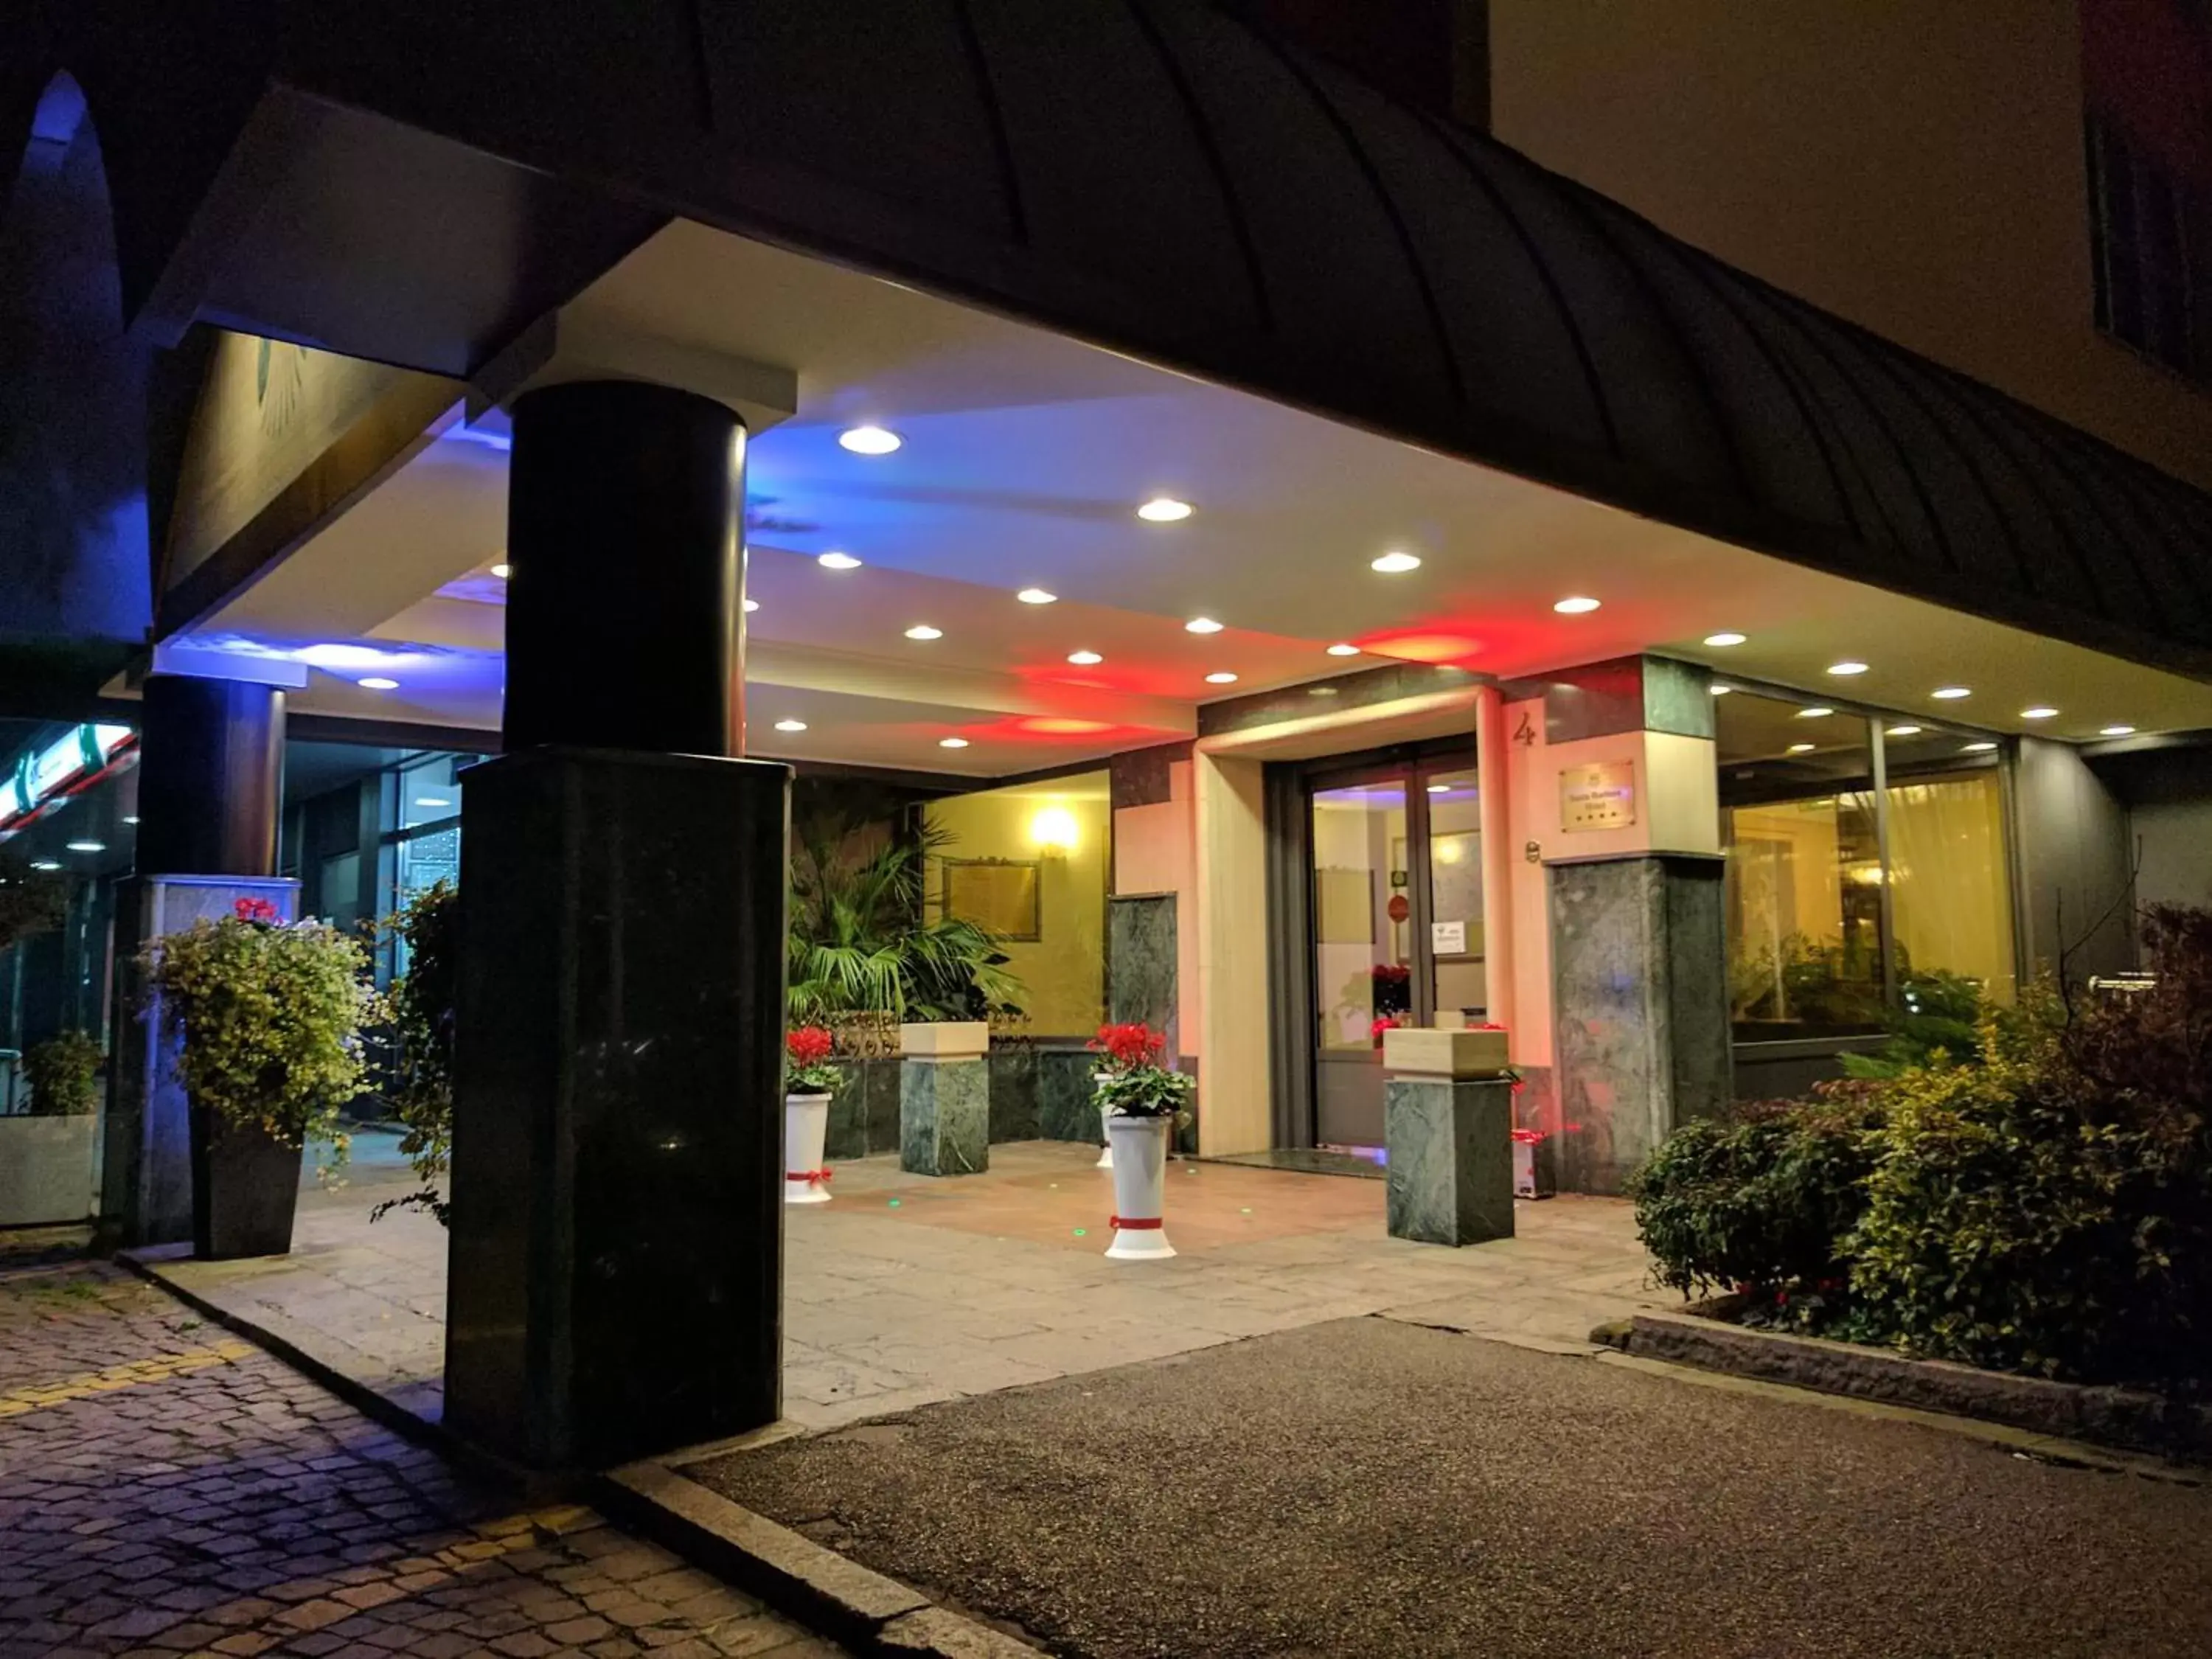 Facade/entrance in Santa Barbara Hotel